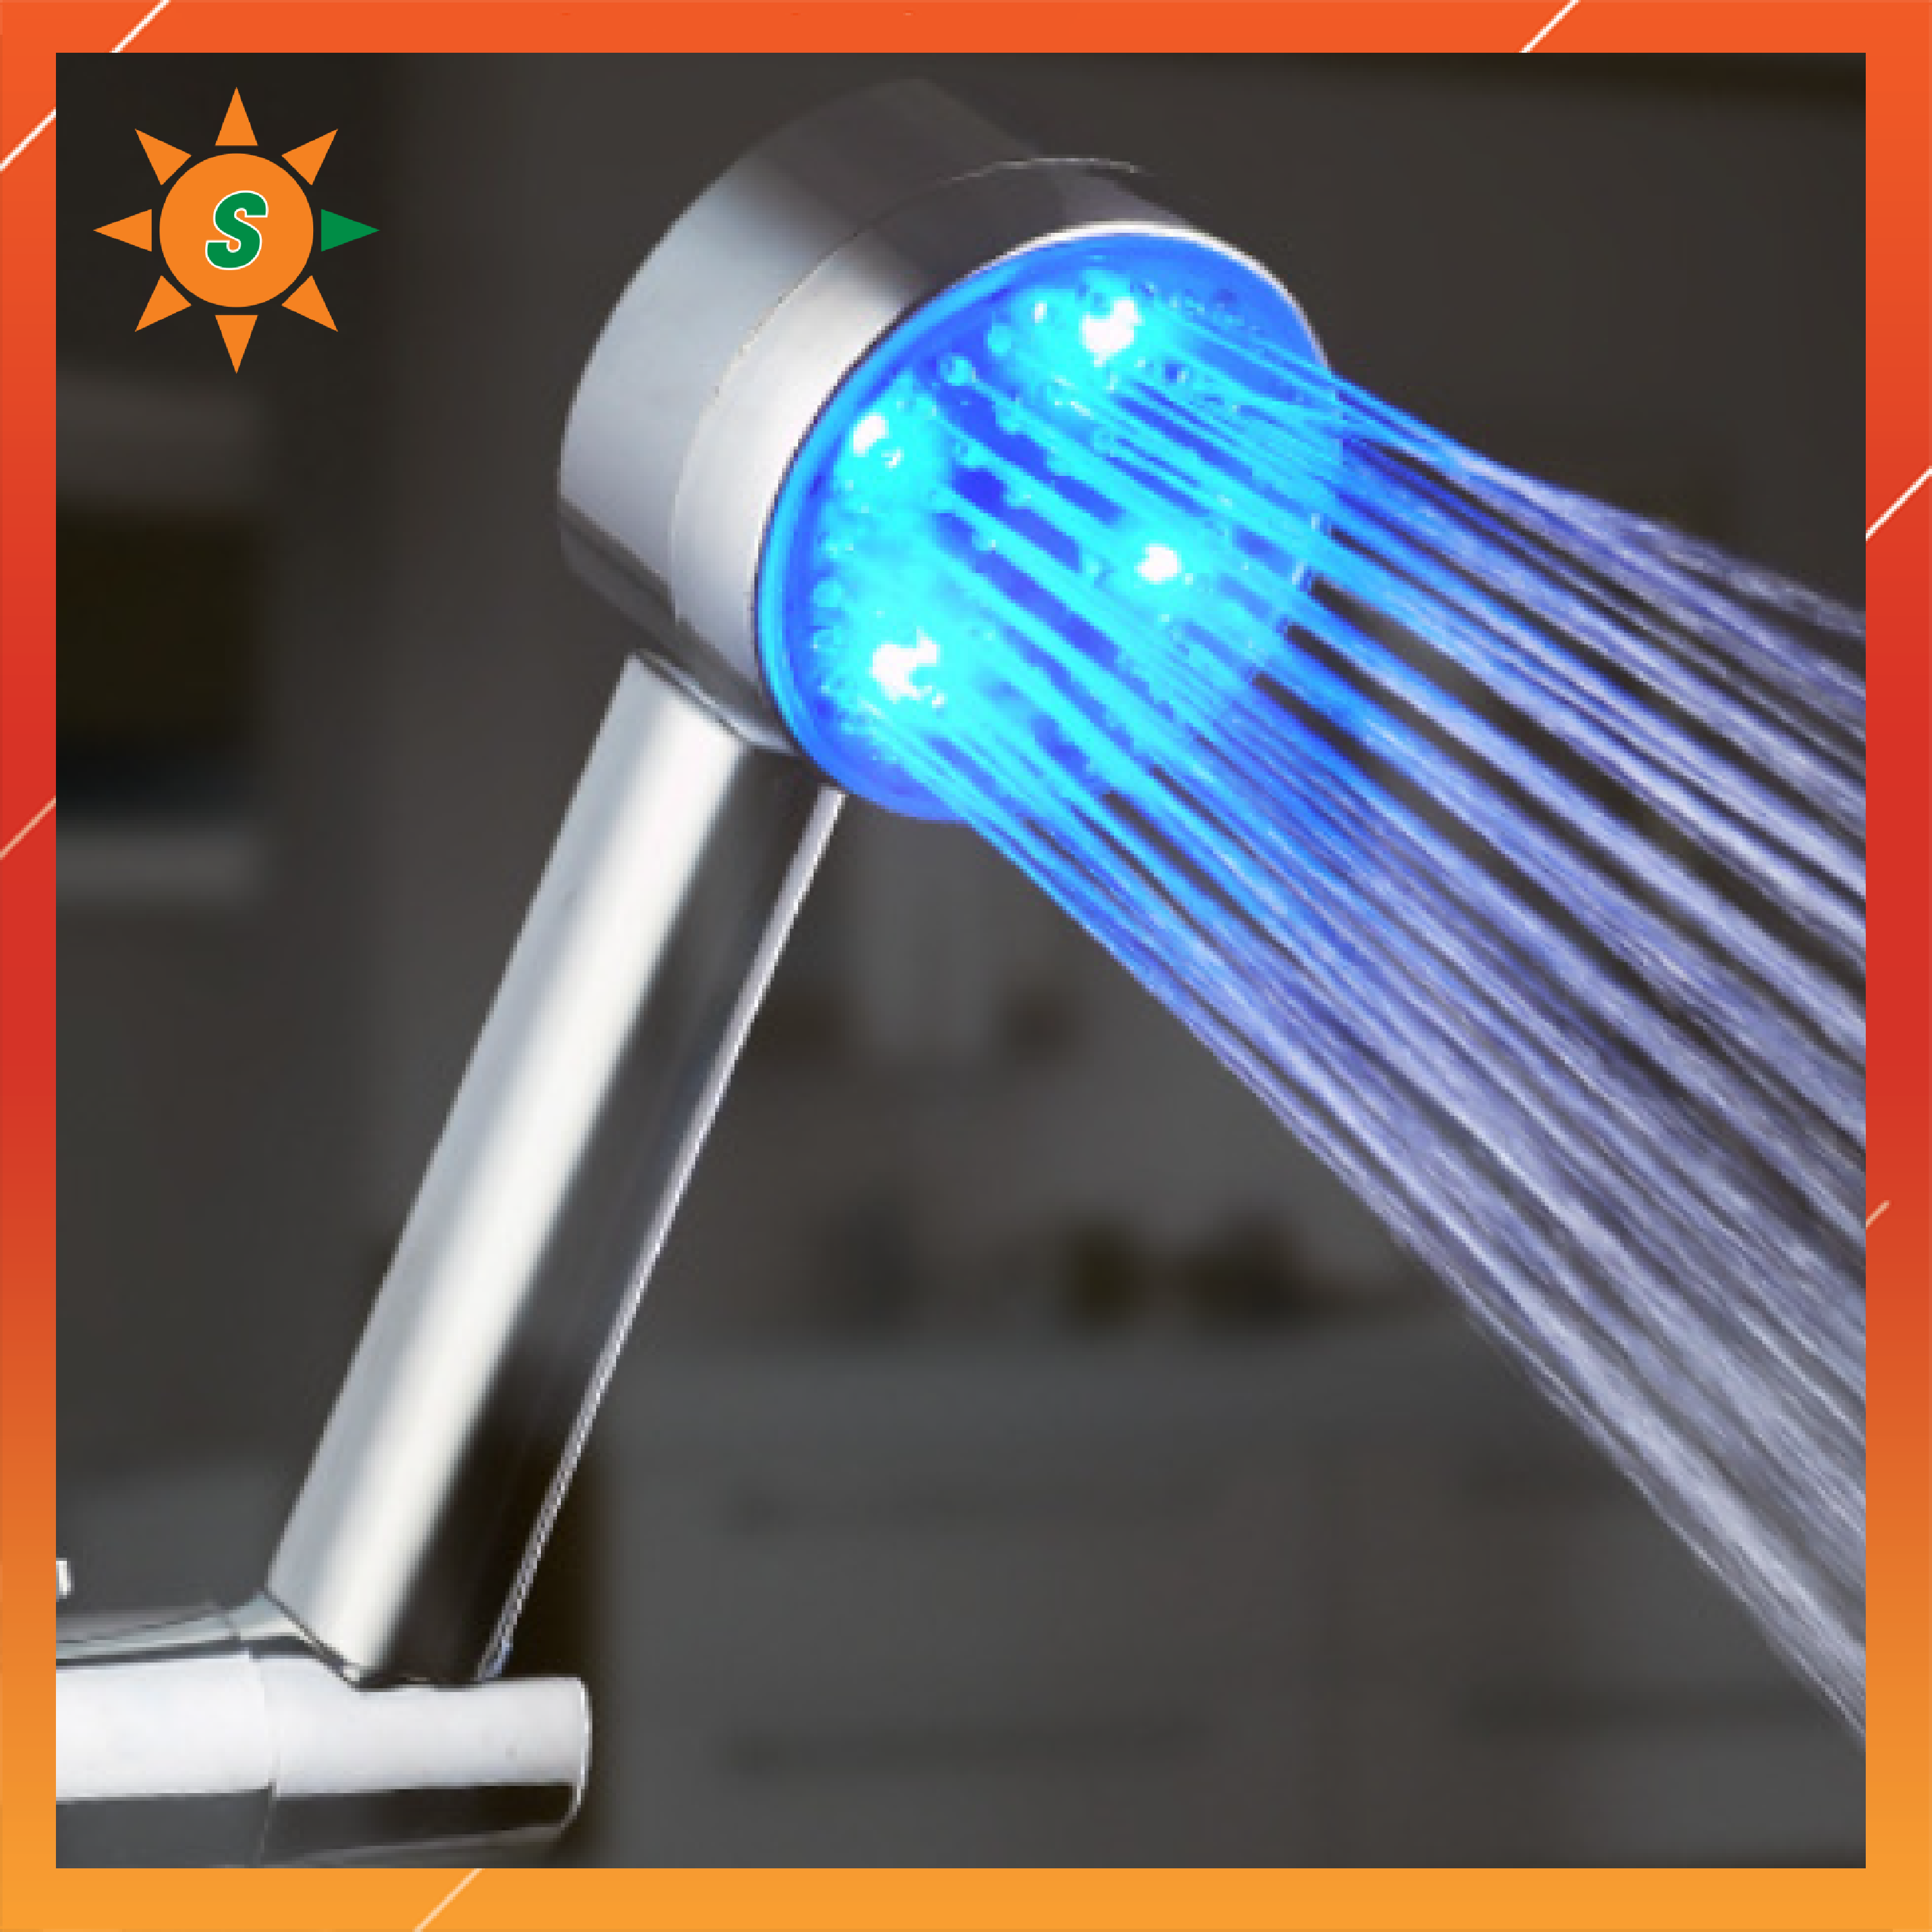 Vòi tắm sen tăng áp lực nước, có đèn thay đổi màu theo nhiệt độ, không cần dùng điện và Pin